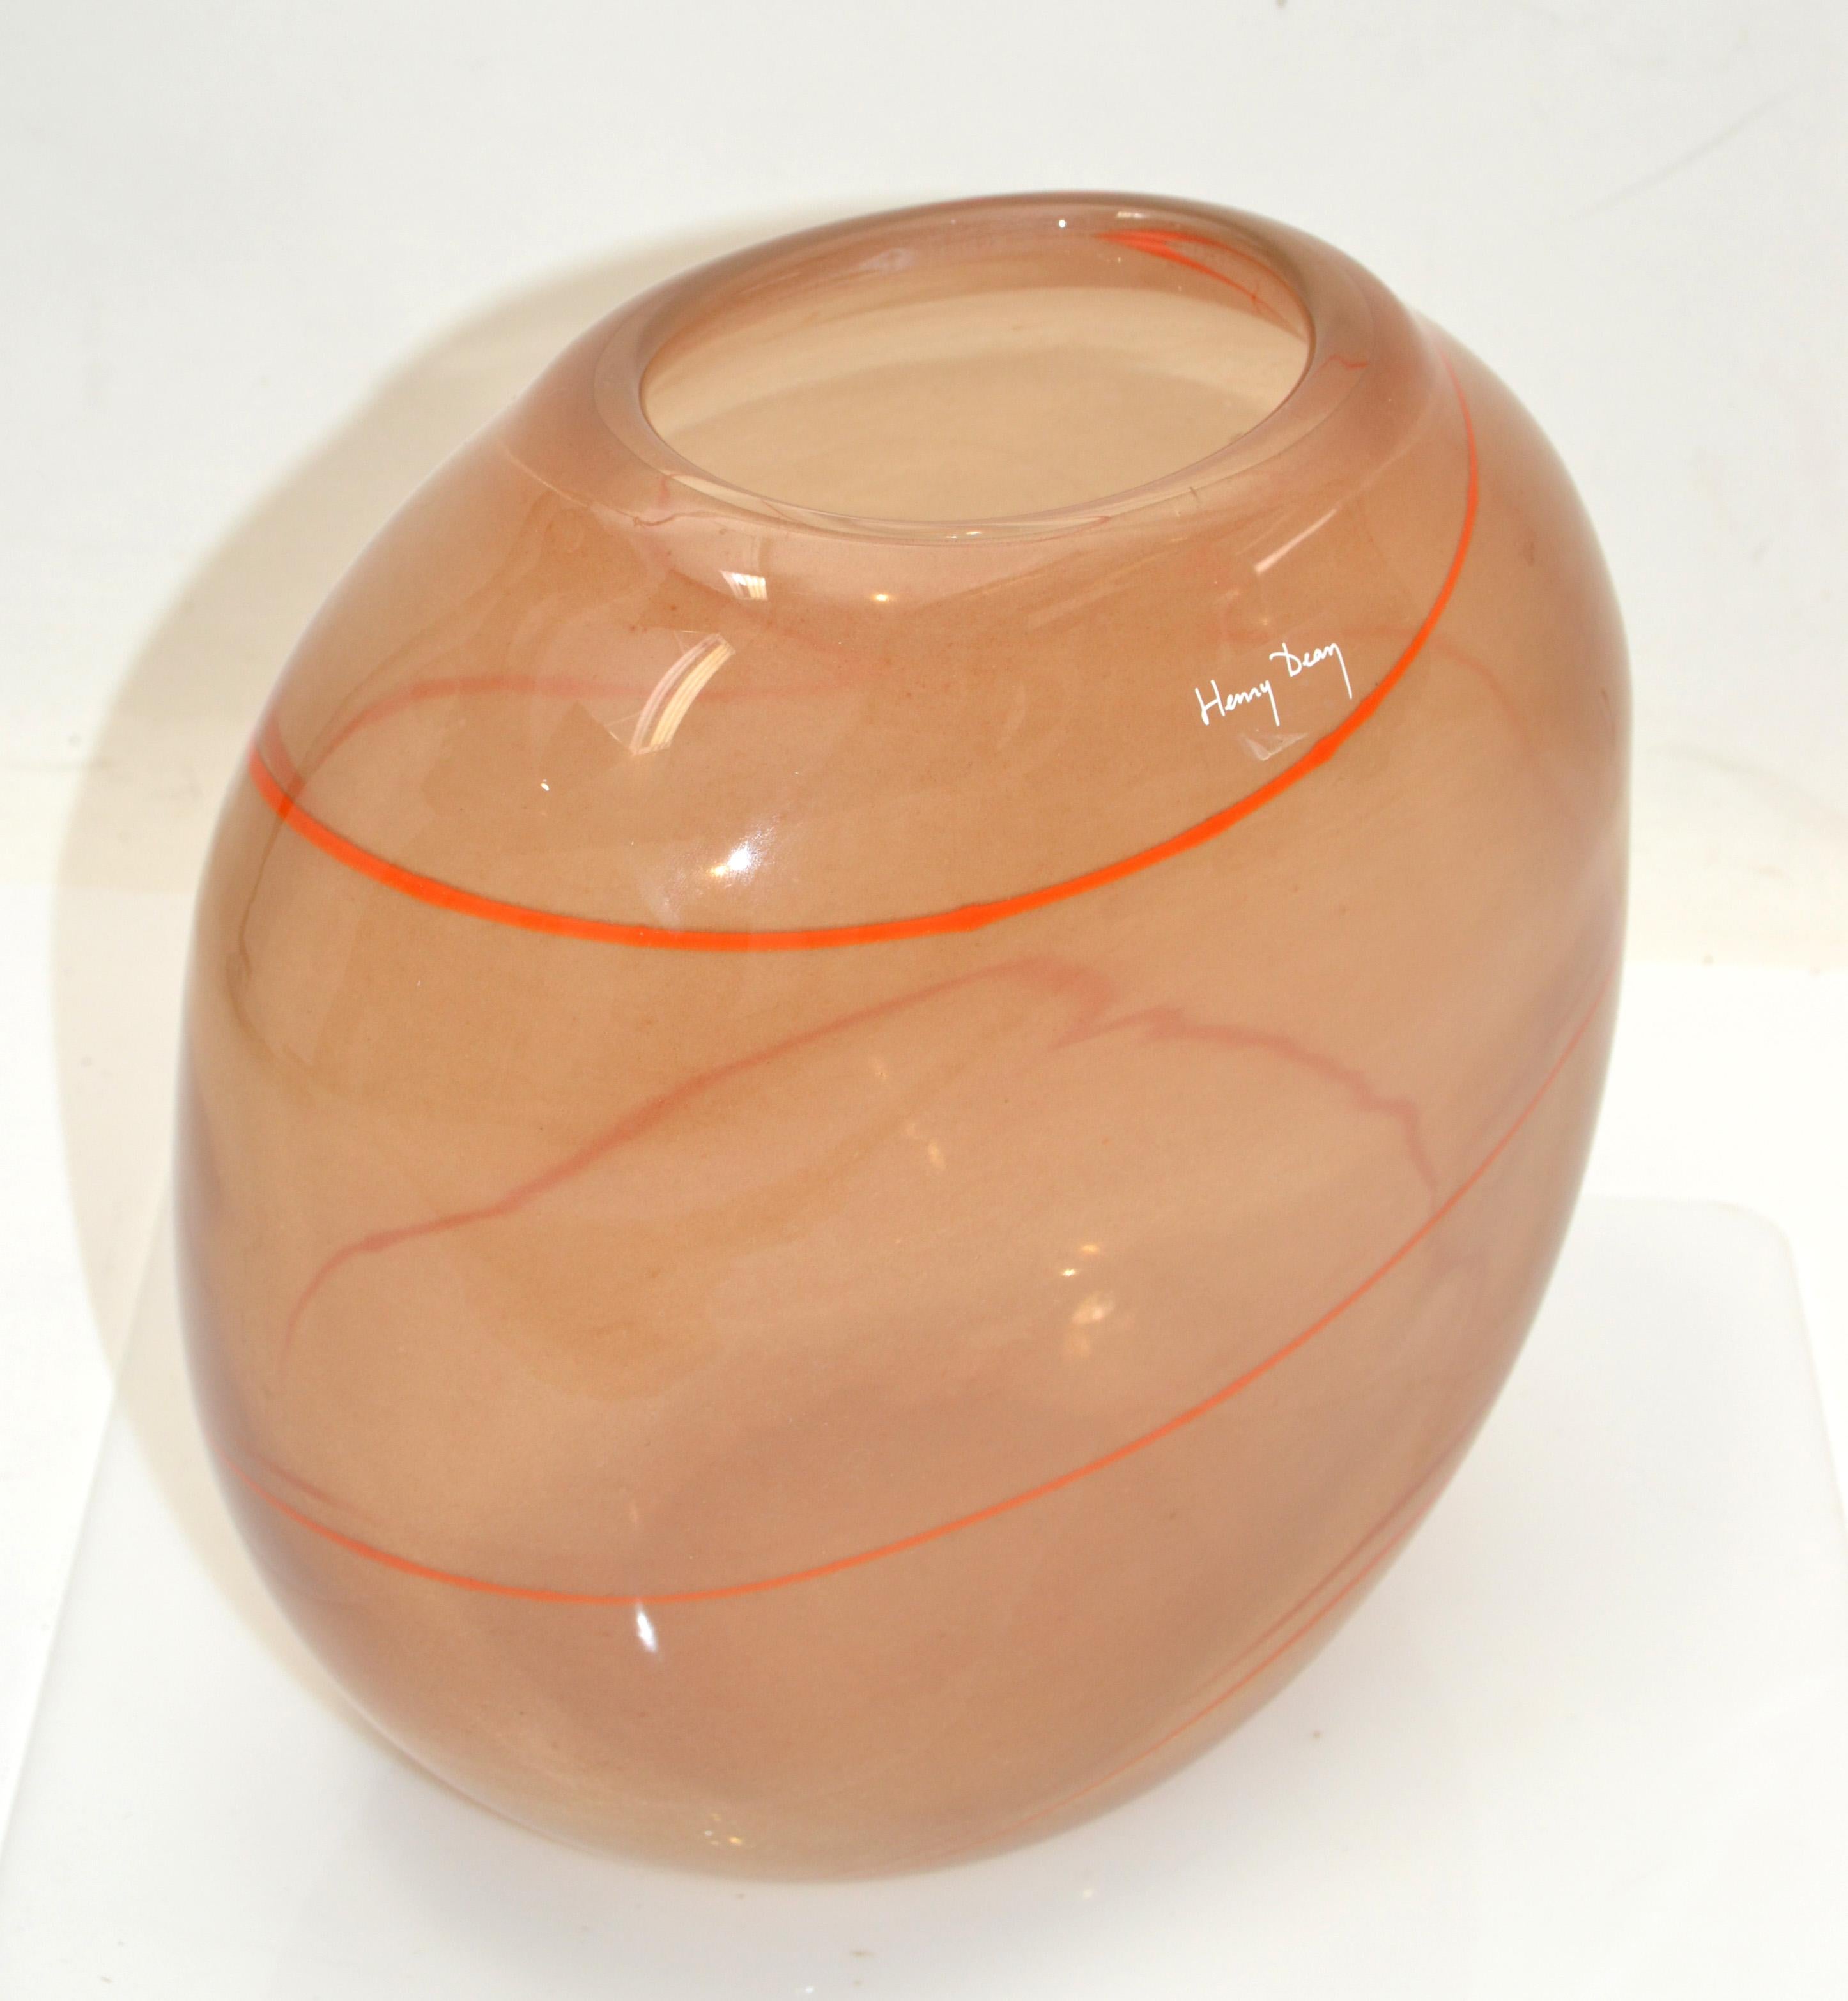 Henry Dean European Mid-Century Modern auffallend apricot und orange mundgeblasenem Kunstglas Vase oder Schale aus Belgien.
Dieses Stück ist sehr schwer und sieht aus jedem Blickwinkel atemberaubend aus.
Markiert an der Öffnung. Die Öffnung misst